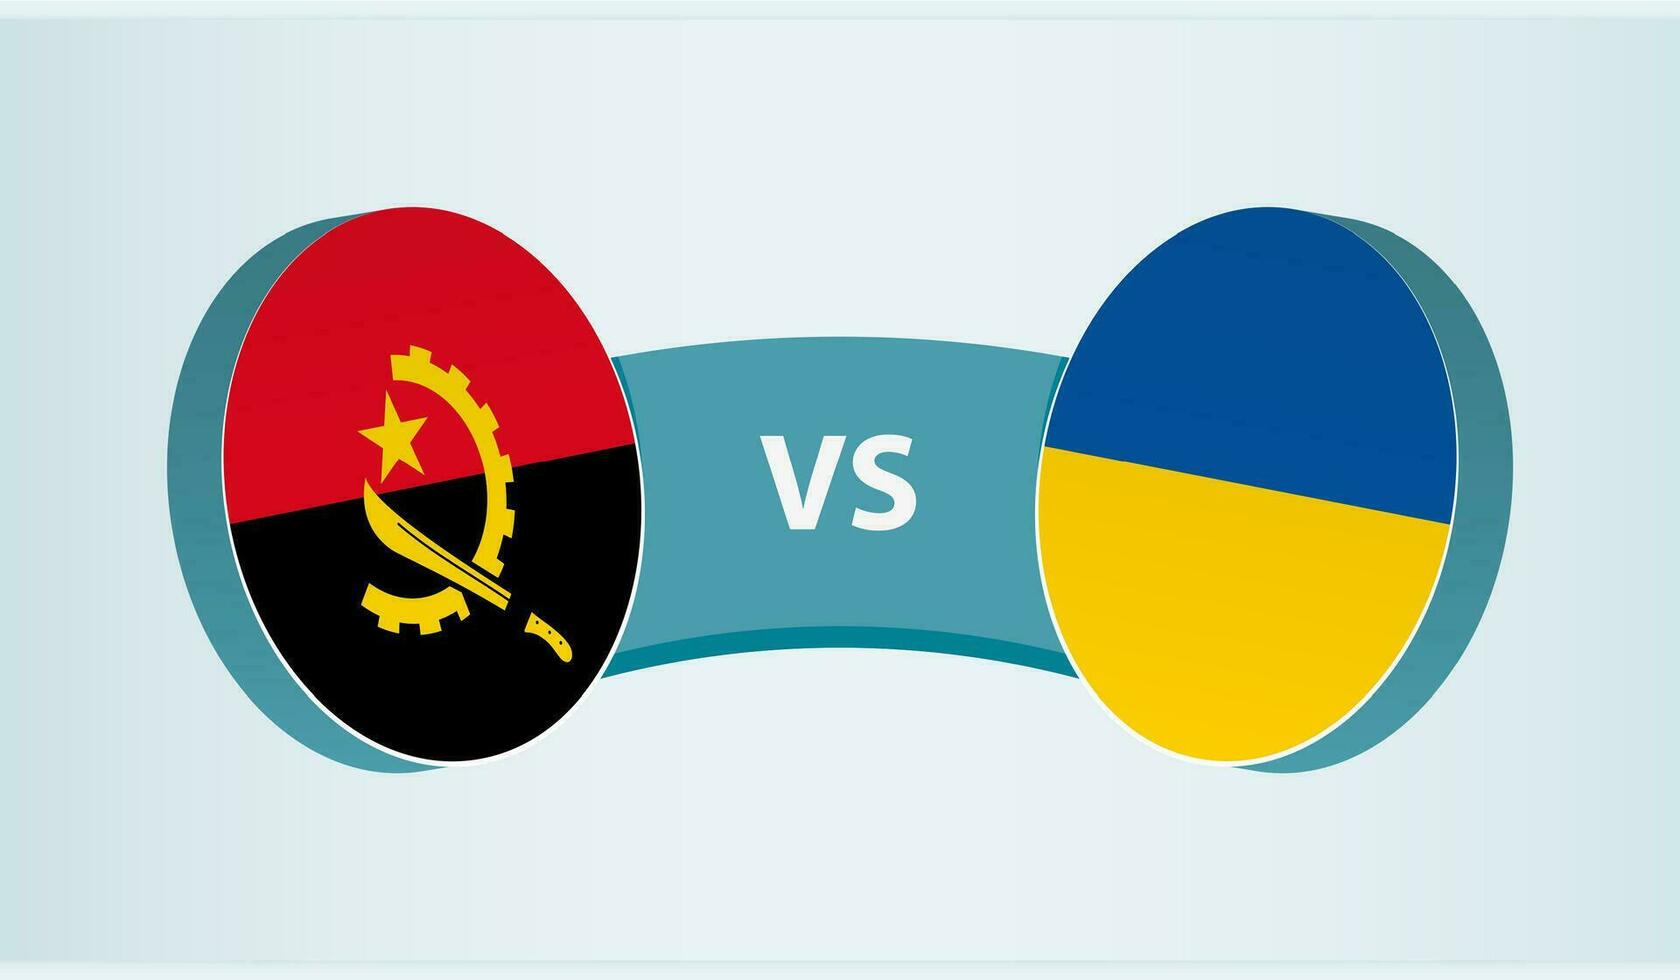 angola mot Ukraina, team sporter konkurrens begrepp. vektor